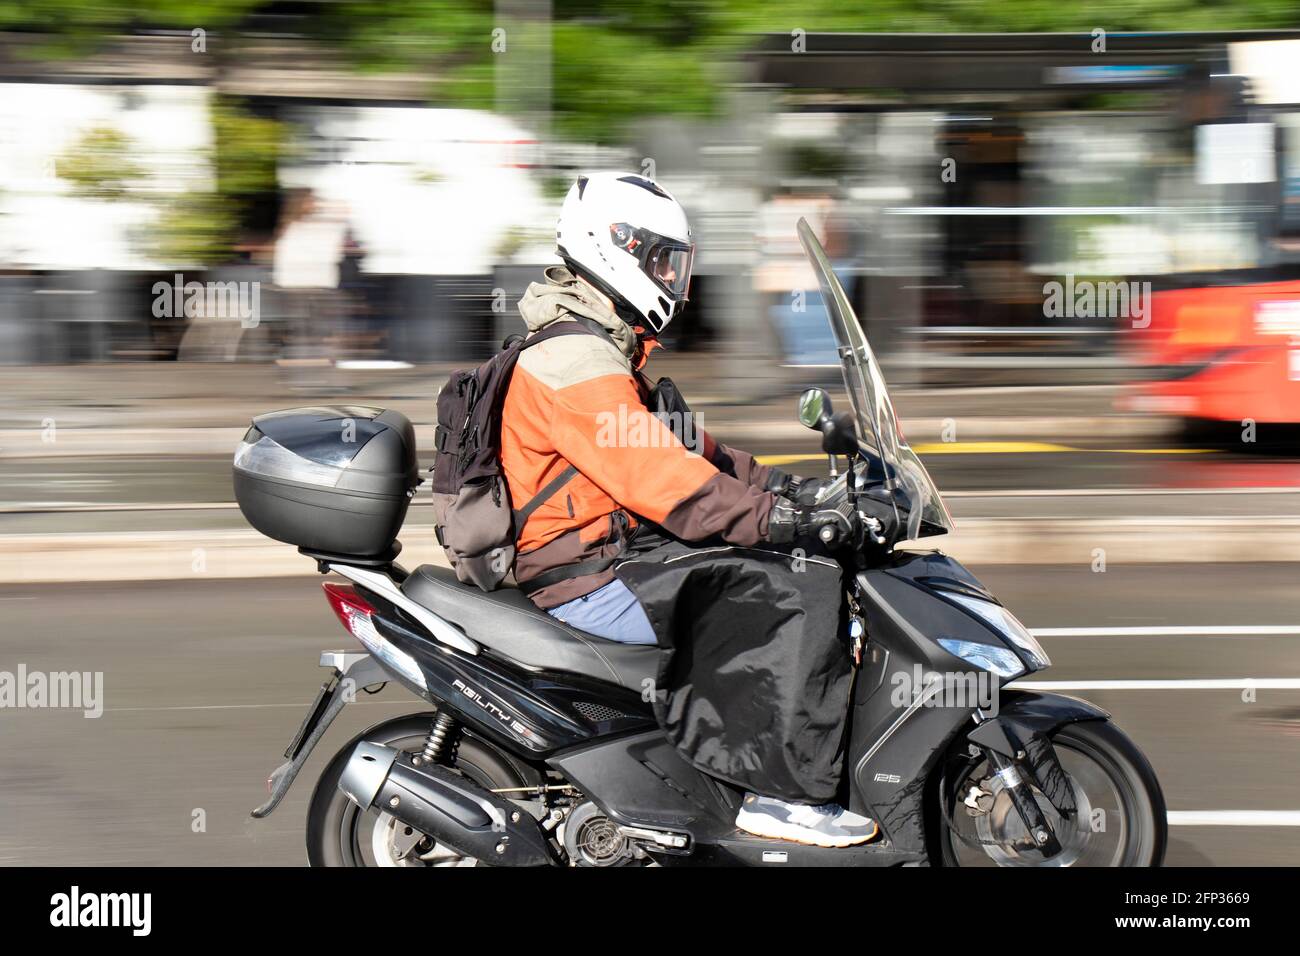 Belgrado, Serbia - 13 maggio 2021: Un uomo che guida uno scooter in strada in una giornata di sole dopo la pioggia Foto Stock